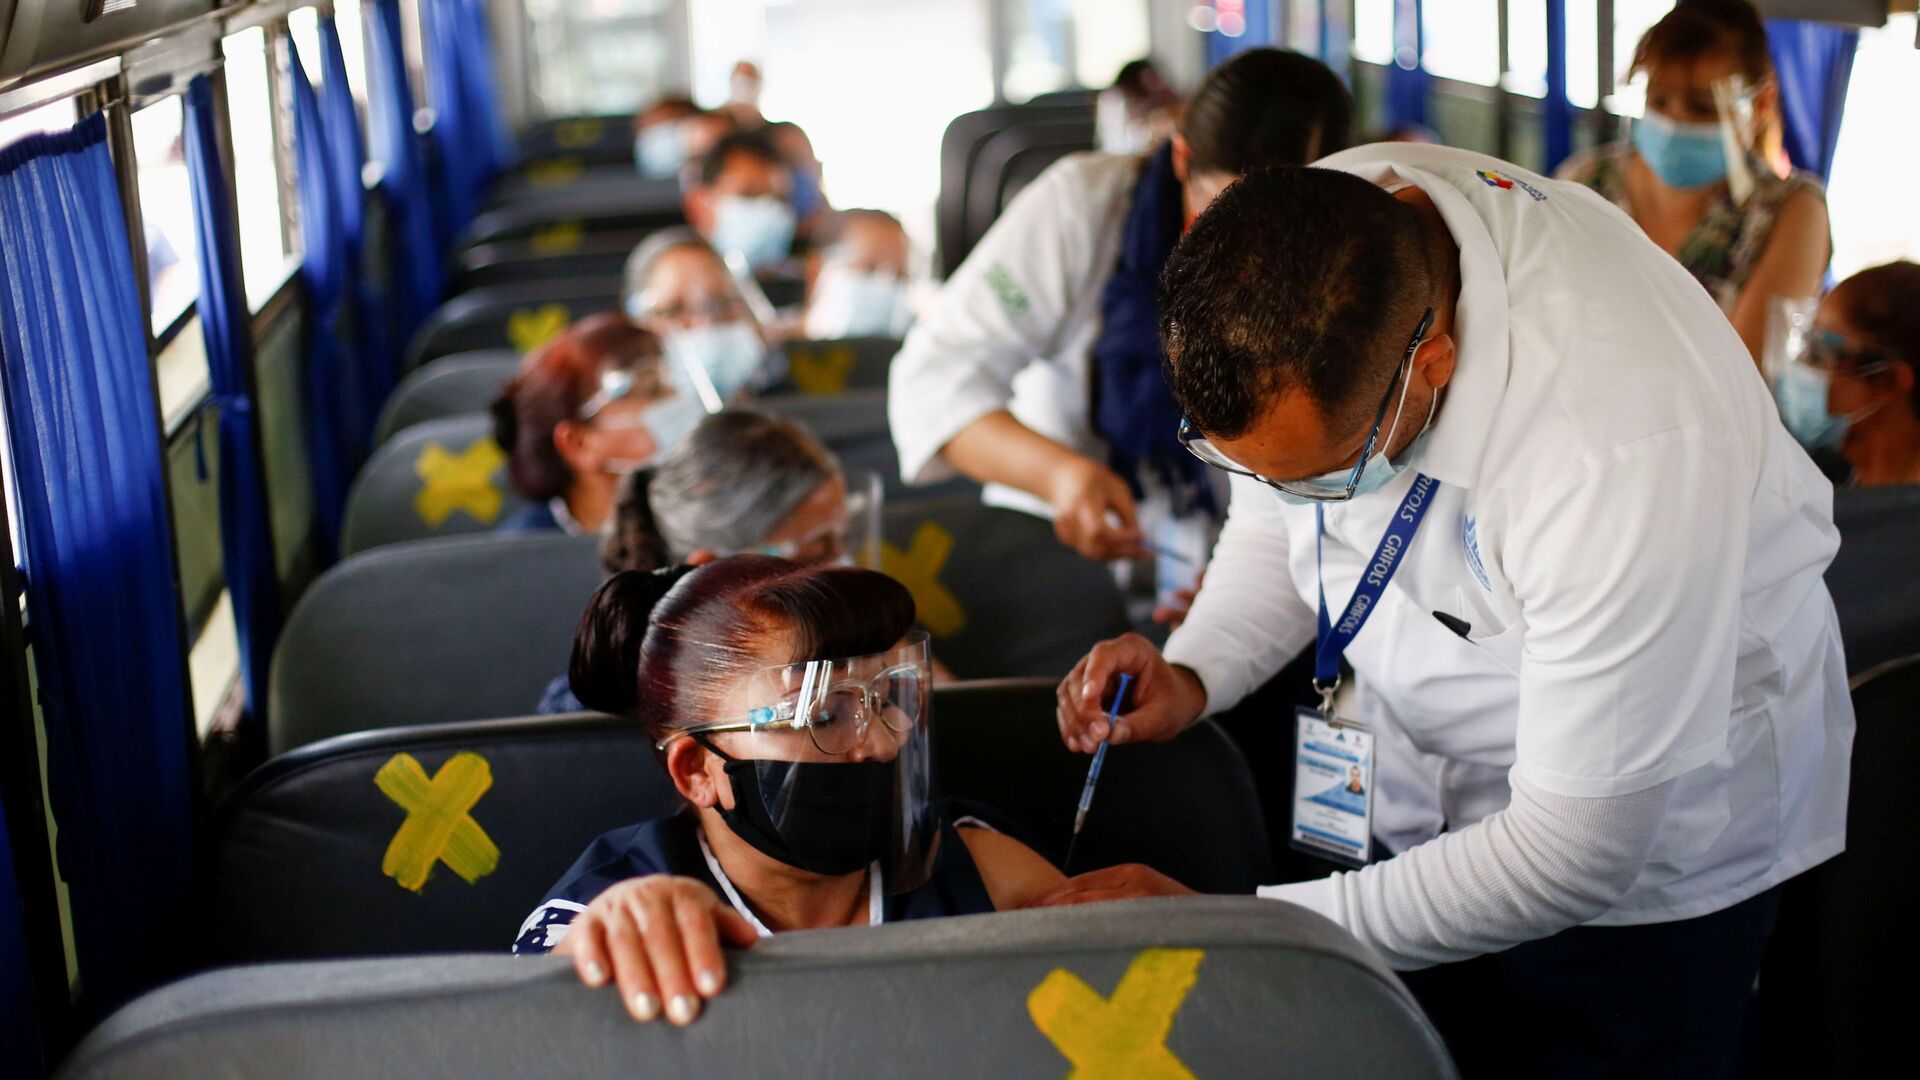 Сотрудники получают дозу вакцины от коронавируса Pfizer-BioNTech (COVID-19) в автобусе в Сьюдад-Хуарес, Мексика - Sputnik Lietuva, 1920, 02.06.2021